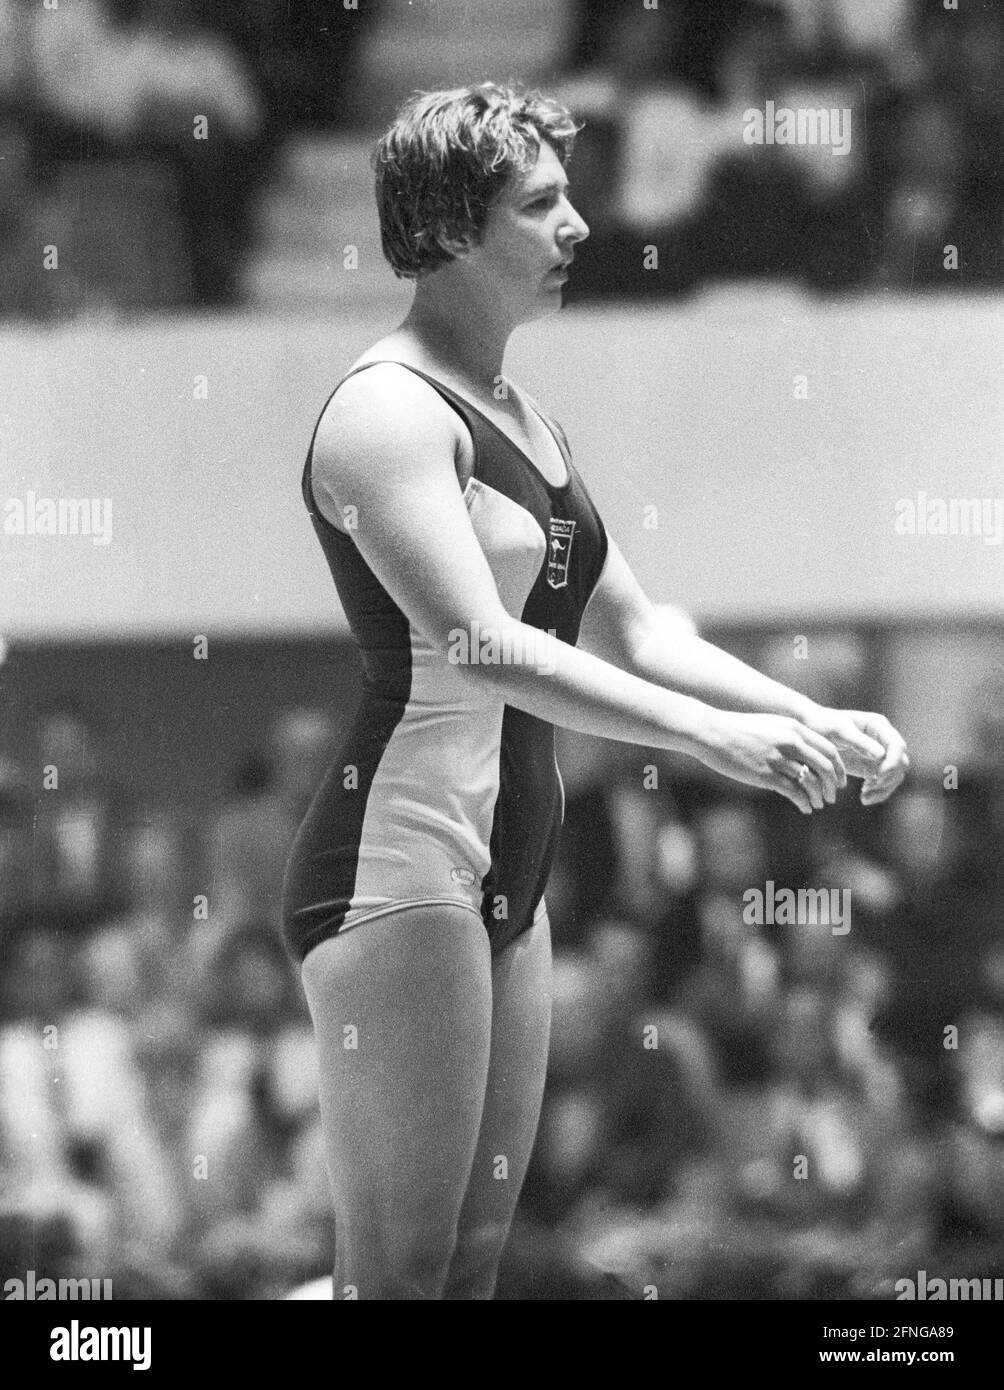 Jeux olympiques d'été 1964 à Tokyo. Natation: Dawn Frazer (Australie). 14.10.1964. [traduction automatique] Banque D'Images